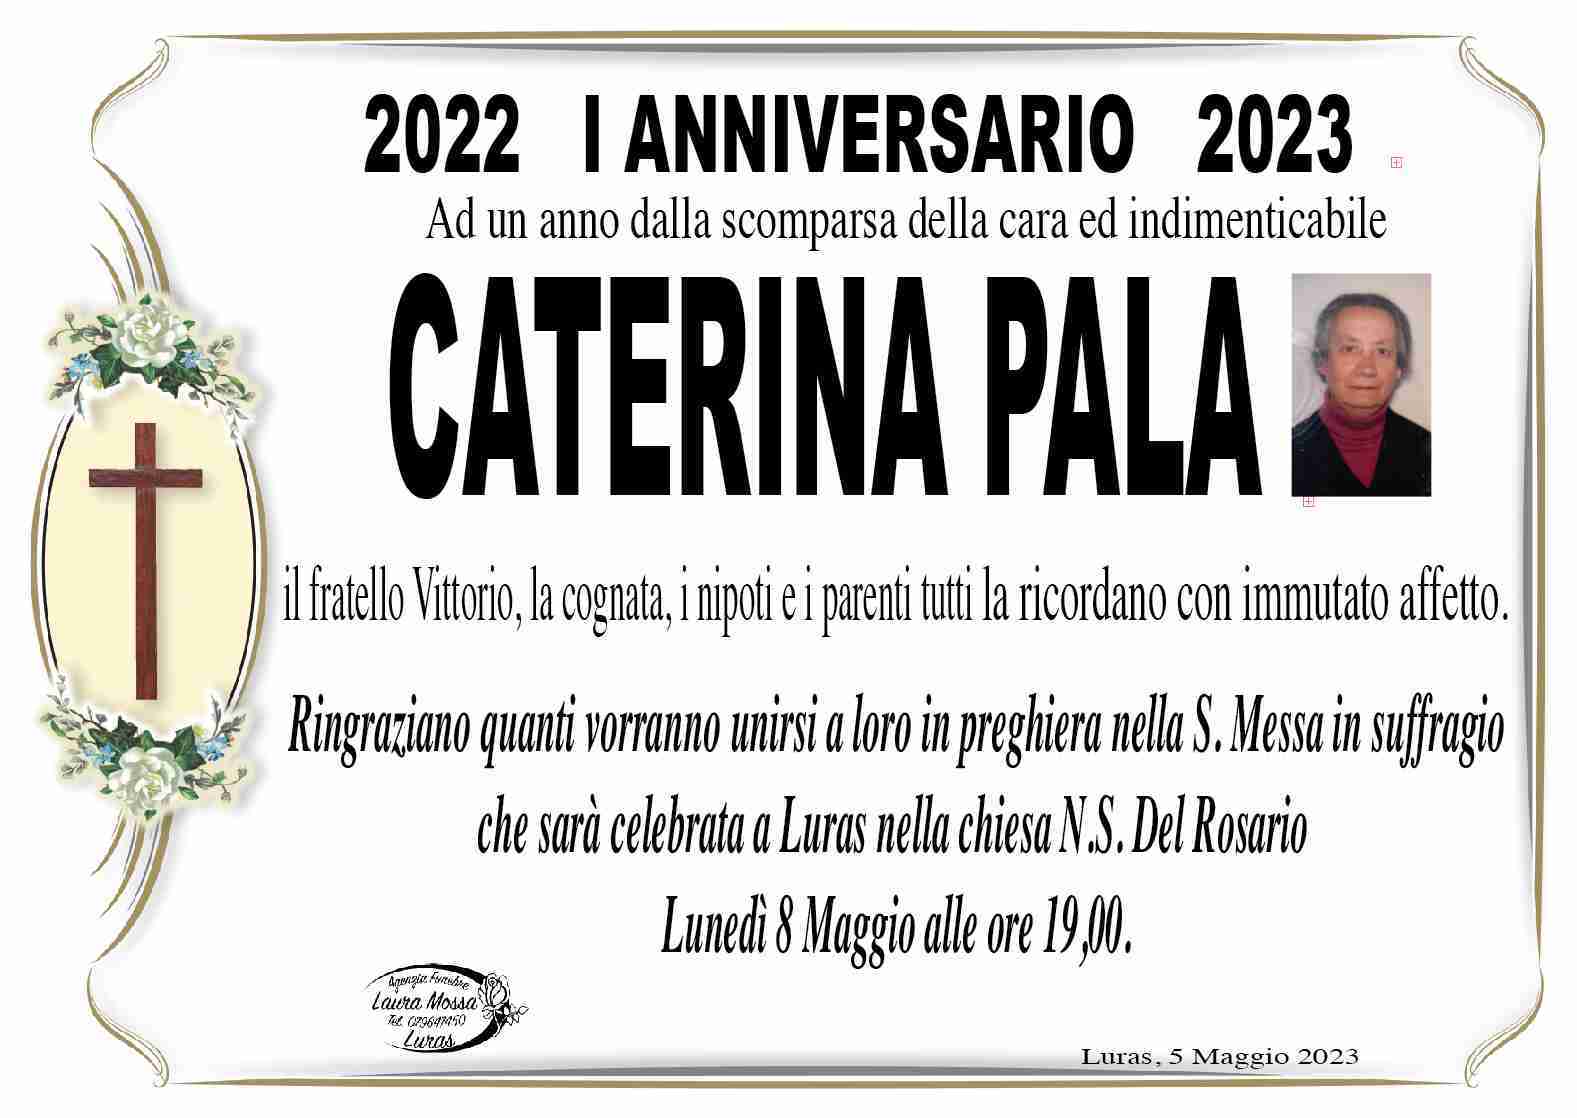 Caterina Pala